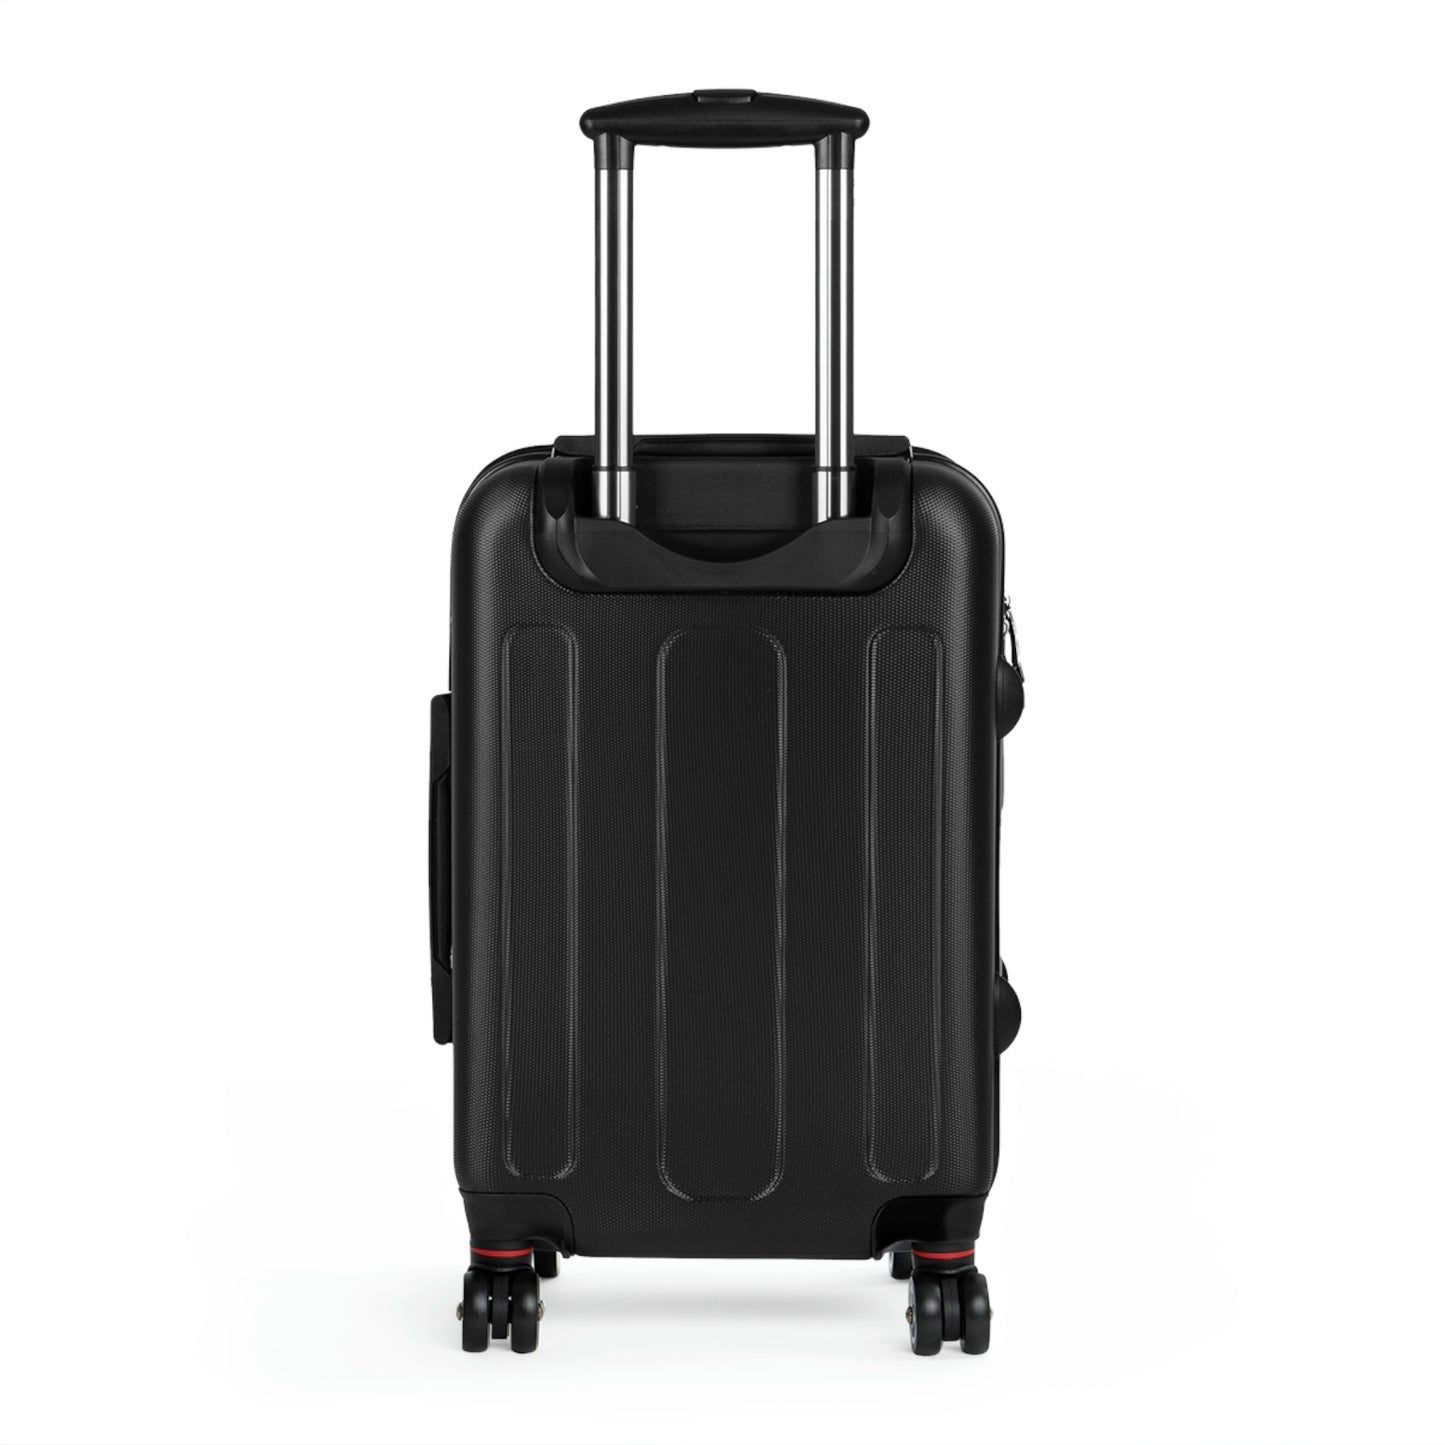 It's A Learned Behavior, Travel Unique Suitcase